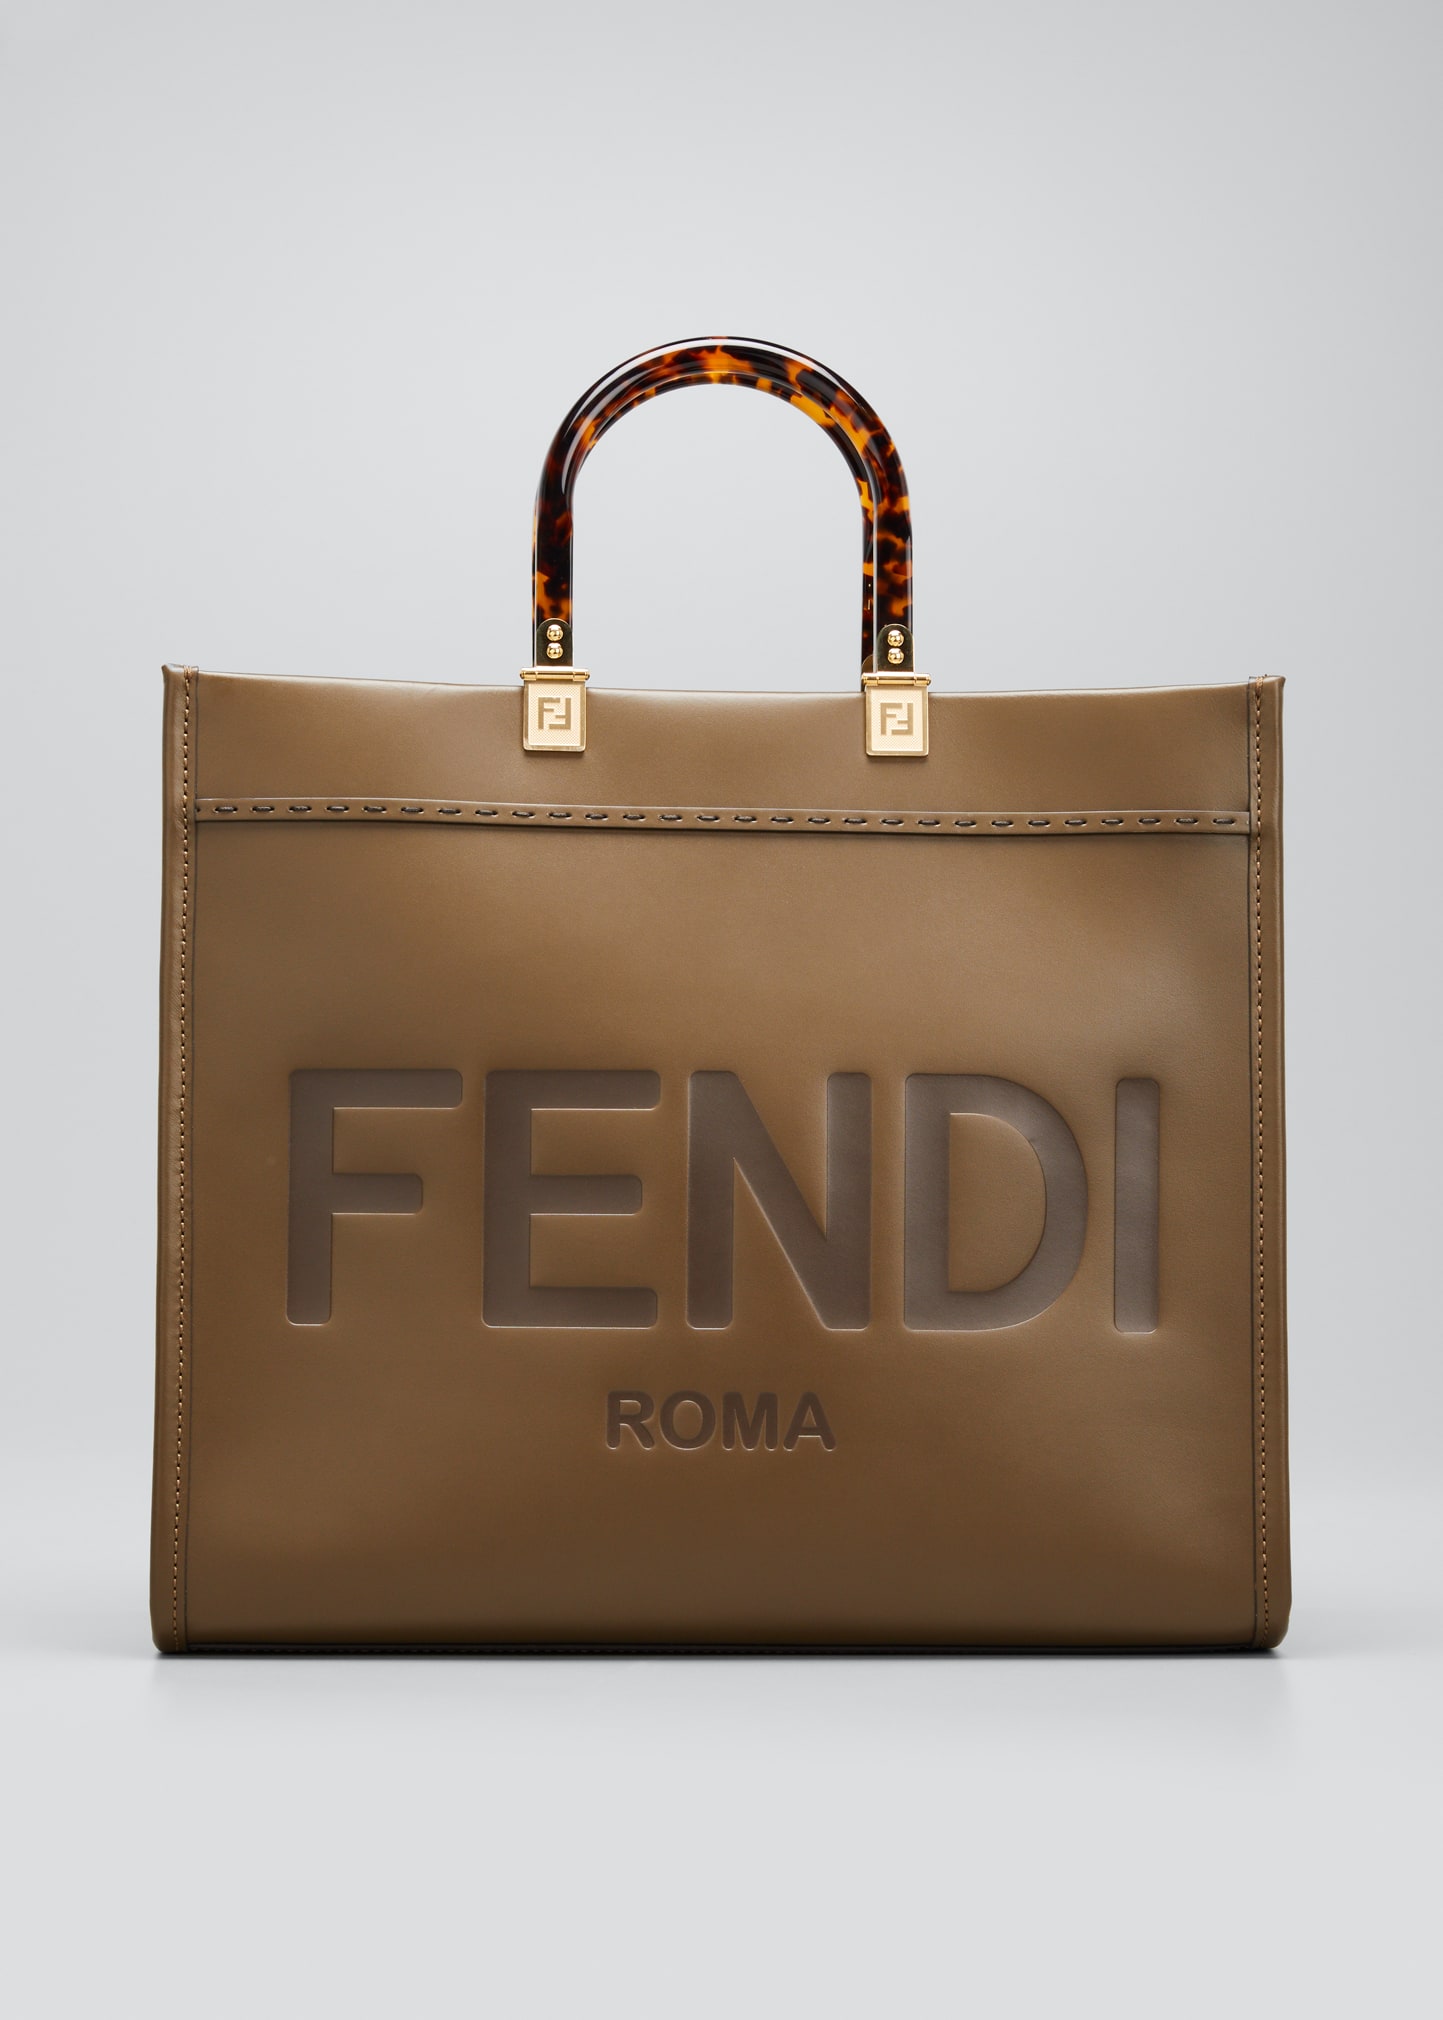 FENDI Bags for Women | ModeSens